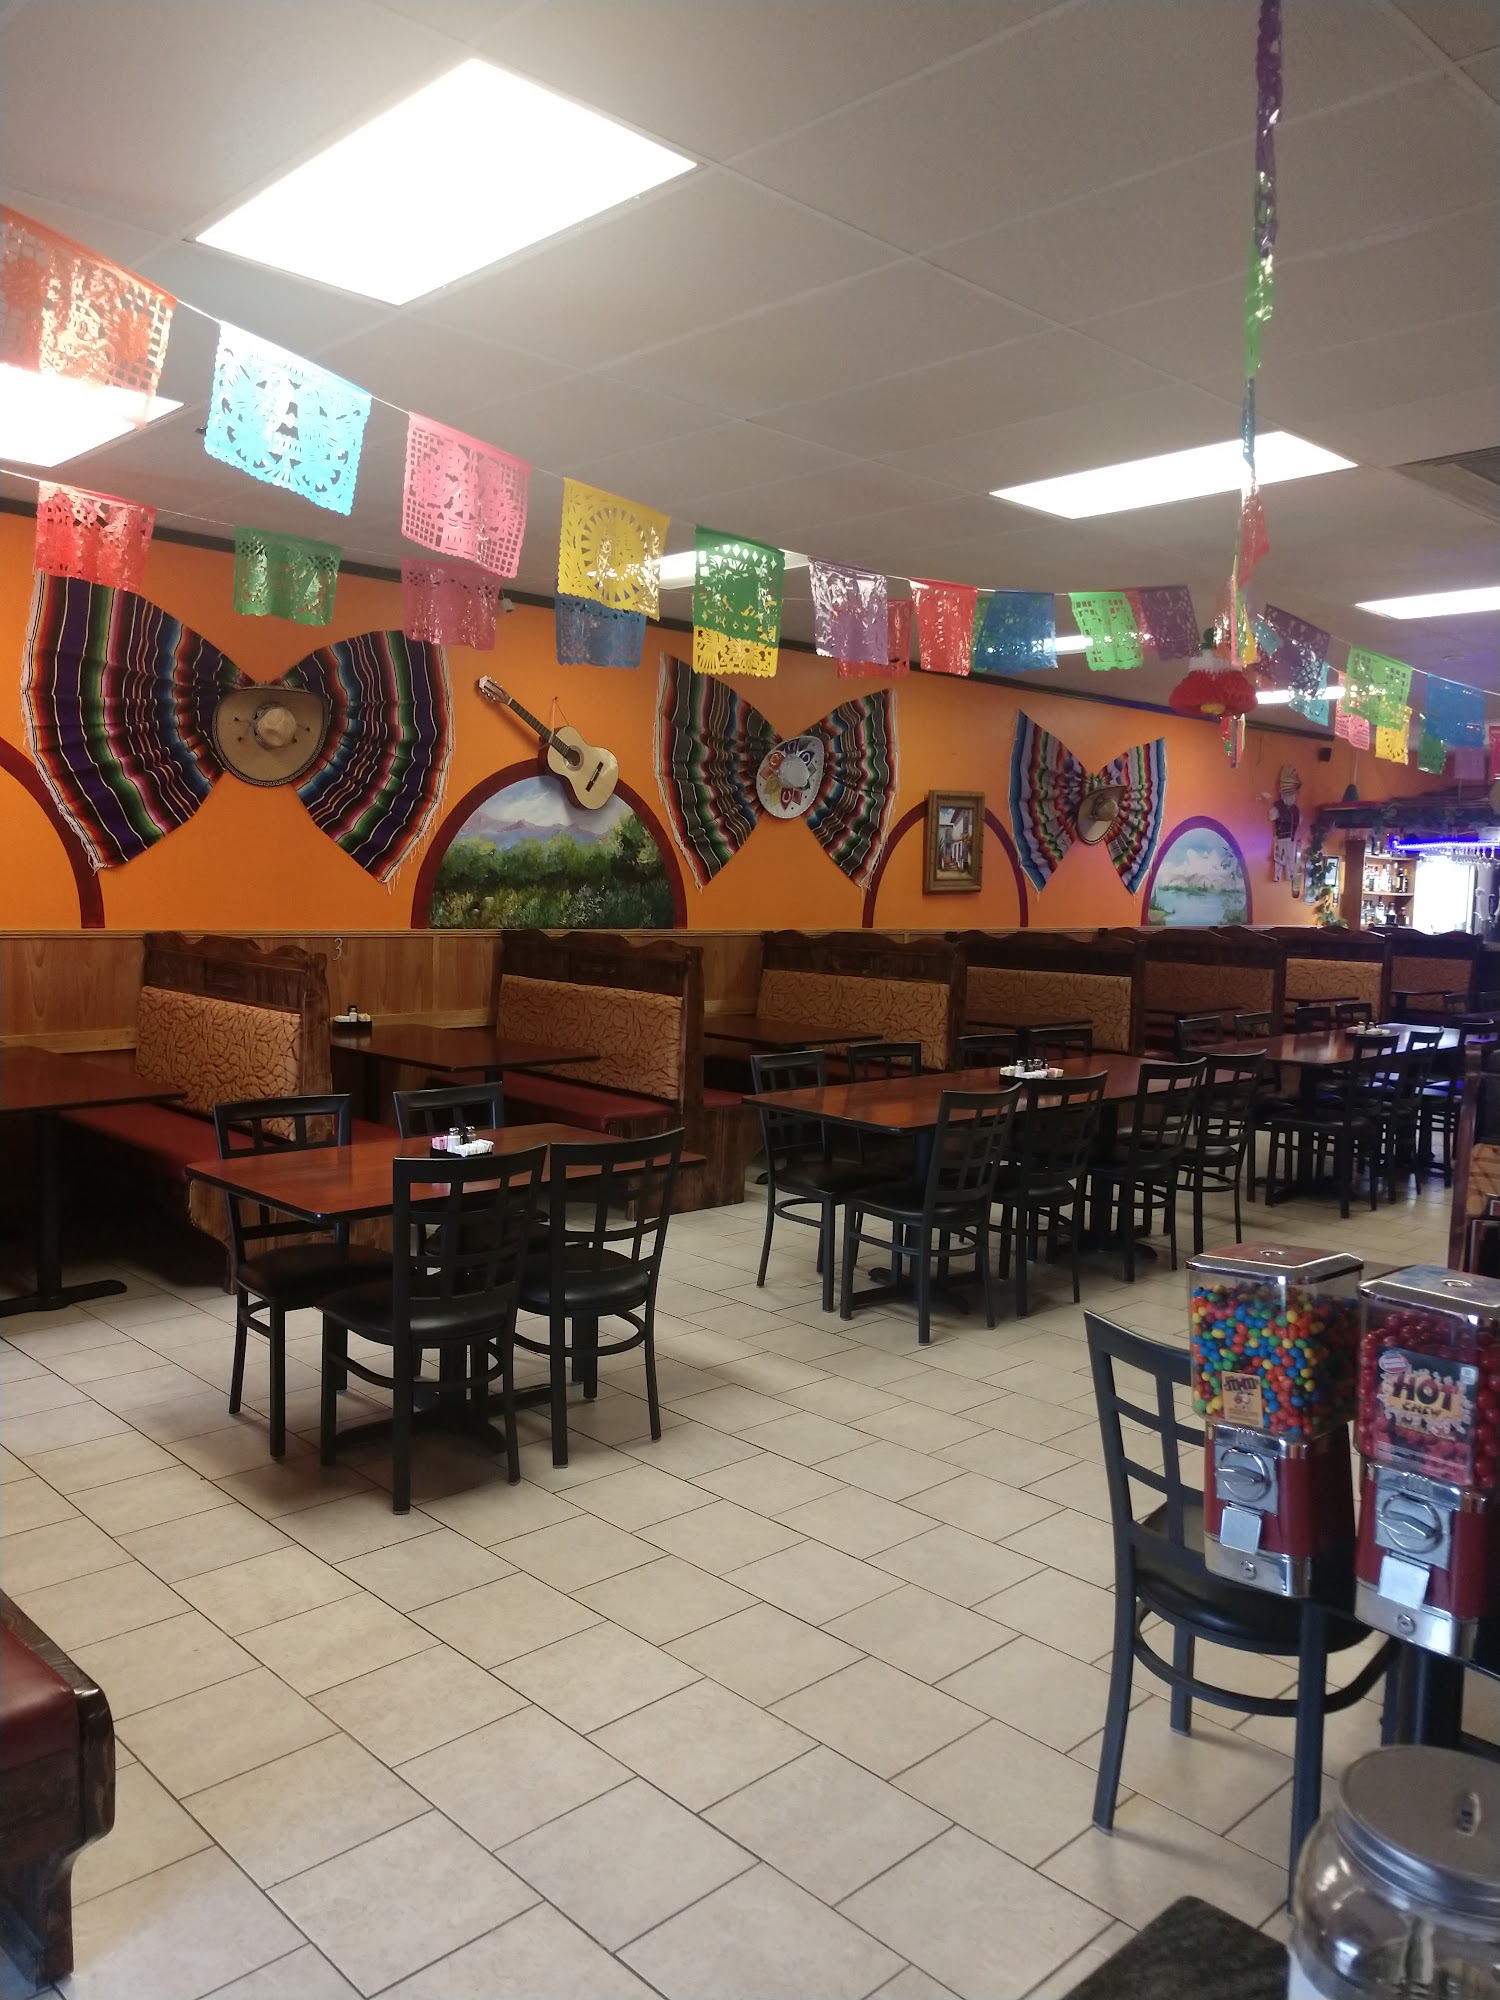 El Manzanillo Mexican Restaurant